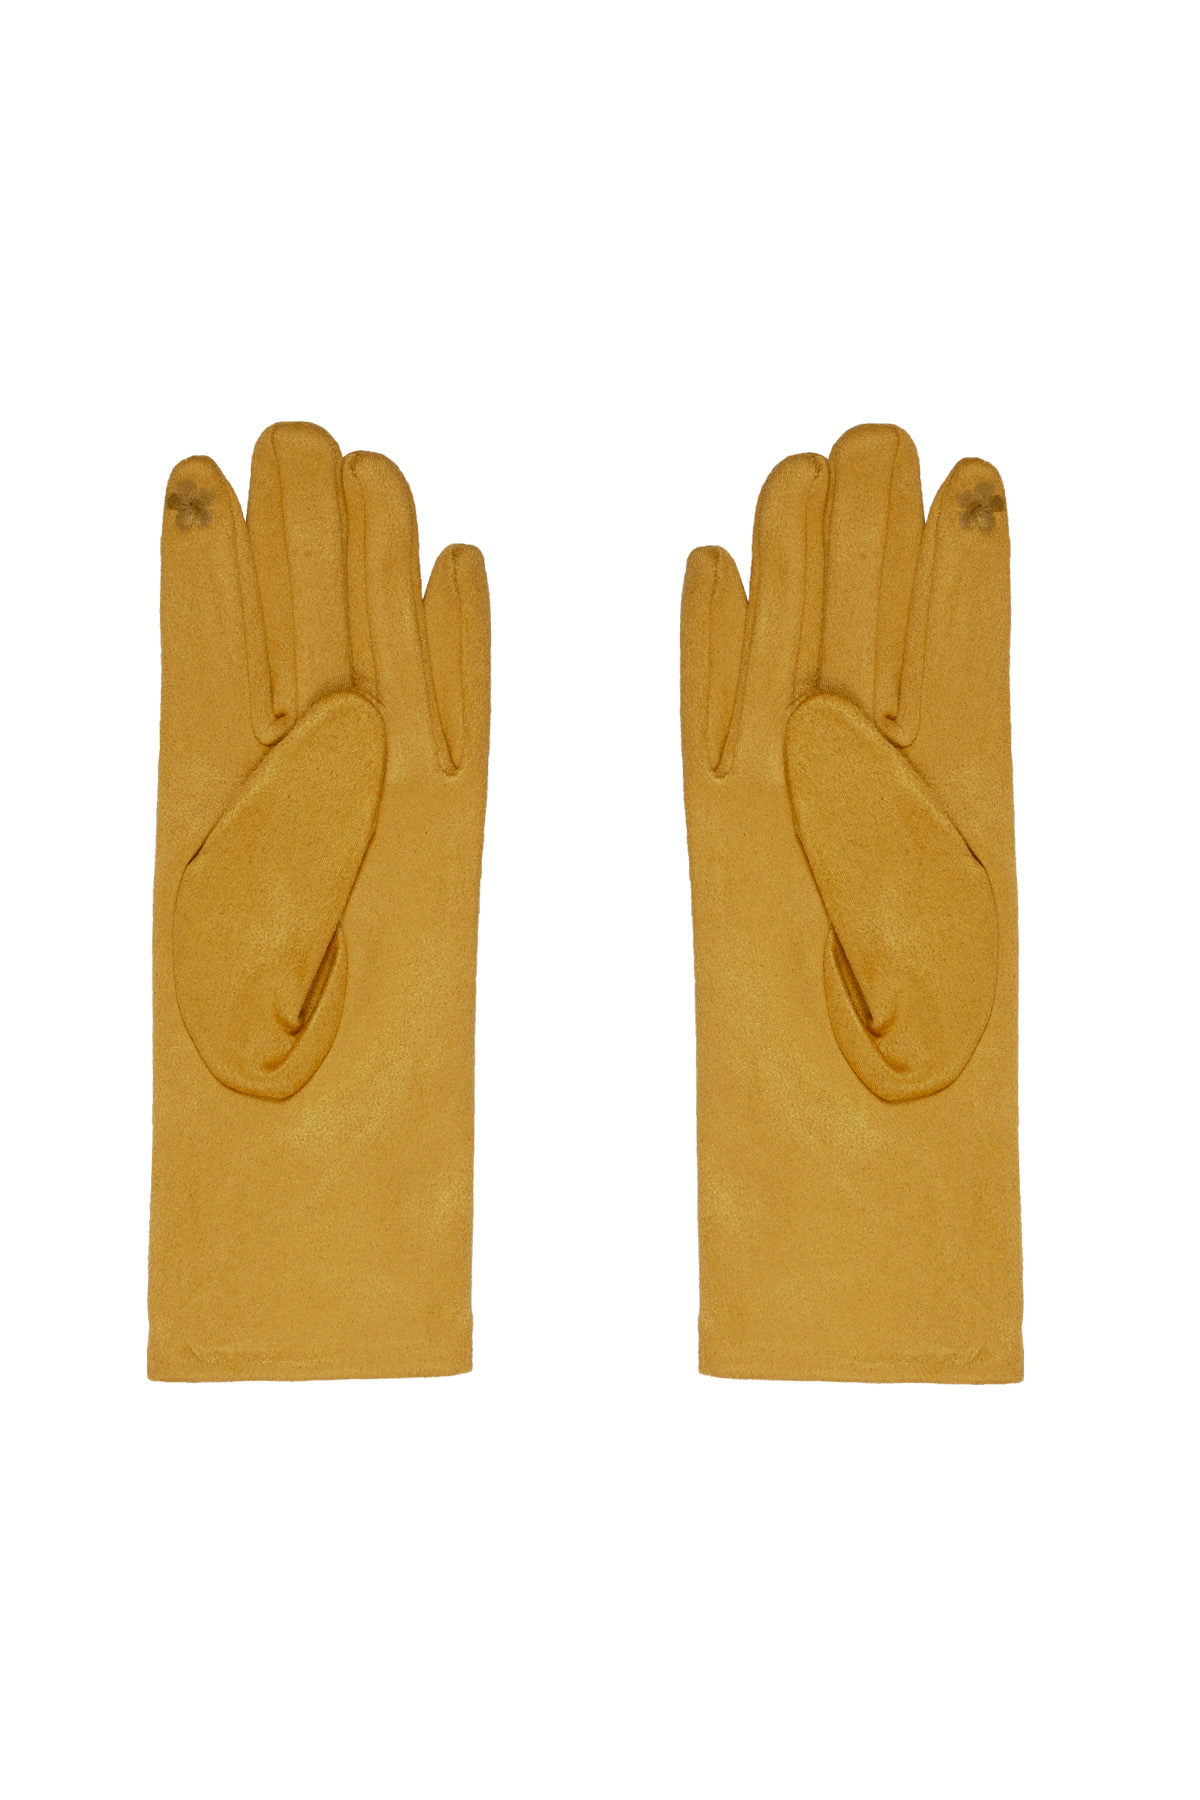 Handschuhe Steine - gelb Bild3